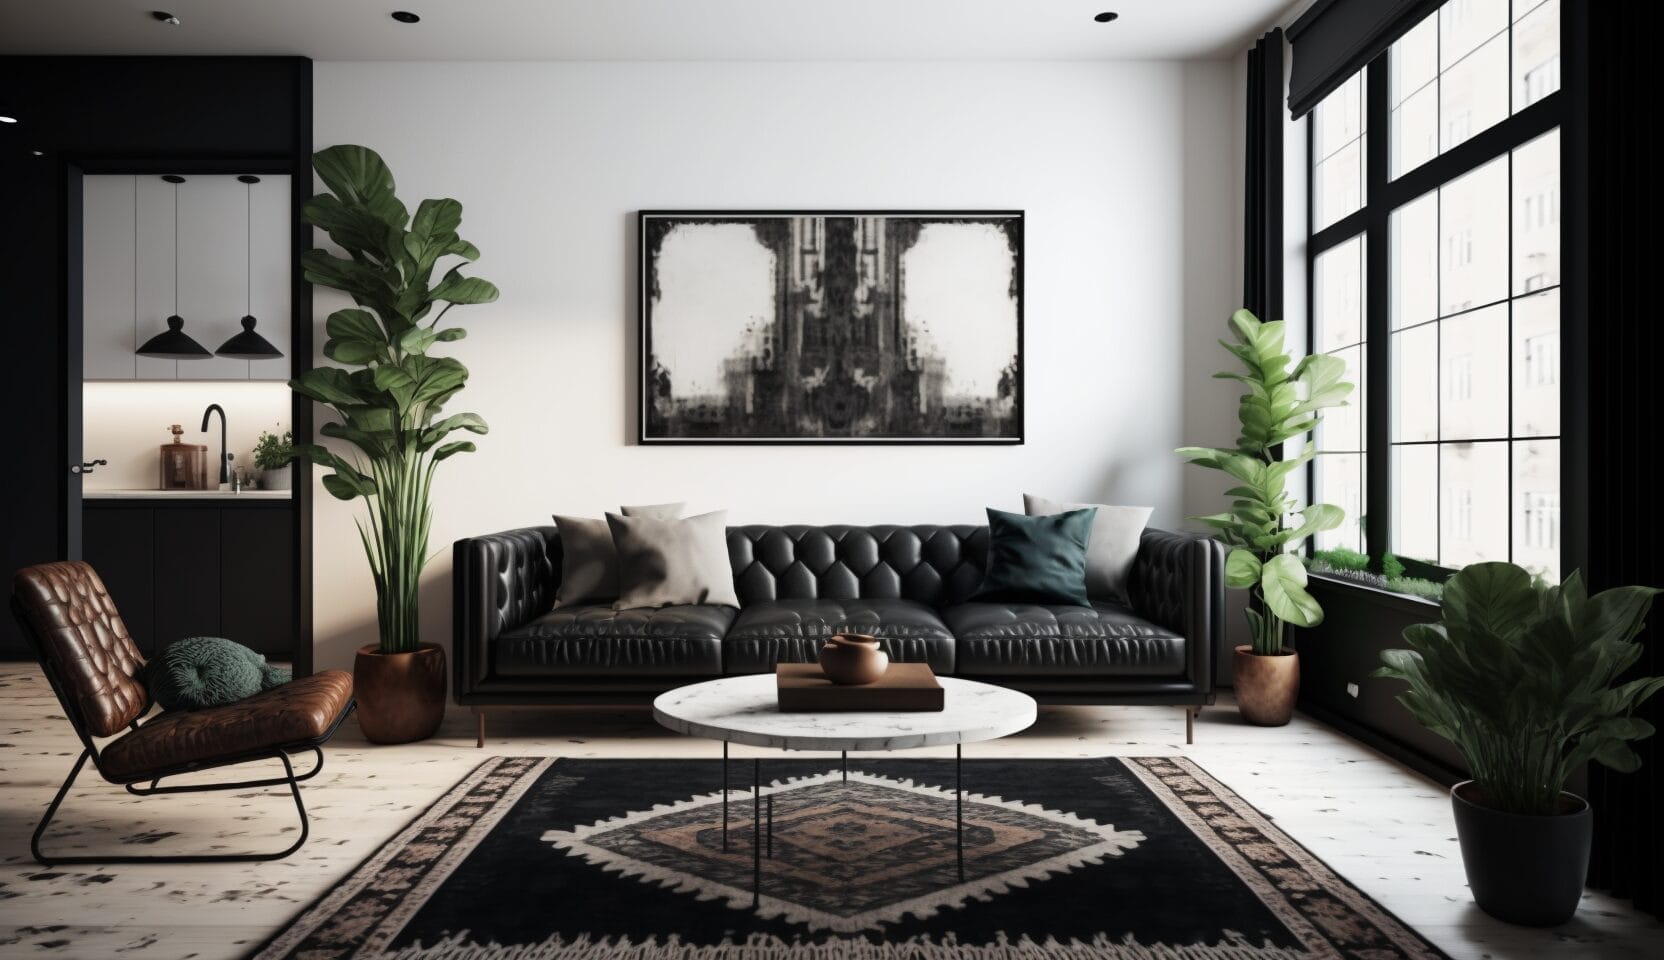 Een moderne woonkamer met een zwartleren bank, groene planten, een vloerkleed met patroon (welke kleur vloerkleed past goed bij een zwarte bank?) en een ronde witmarmeren salontafel. Grote ramen aan de rechterkant laten natuurlijk licht binnen.